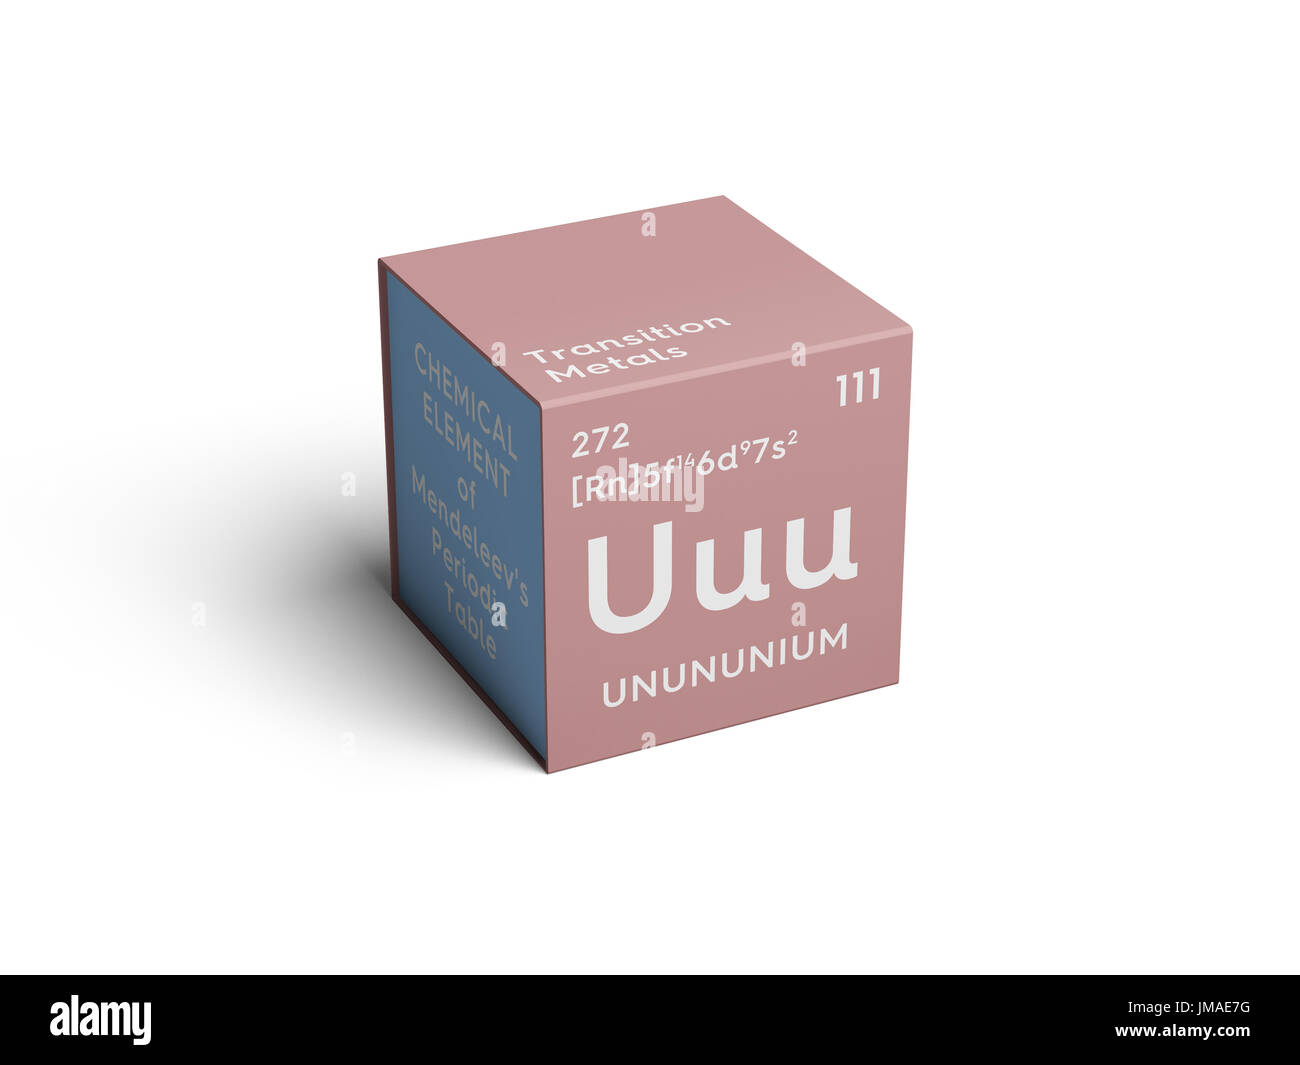 Unununium. Transition metals. Chemical Element of Mendeleev's Periodic Table. Unununium in square cube creative concept. Stock Photo